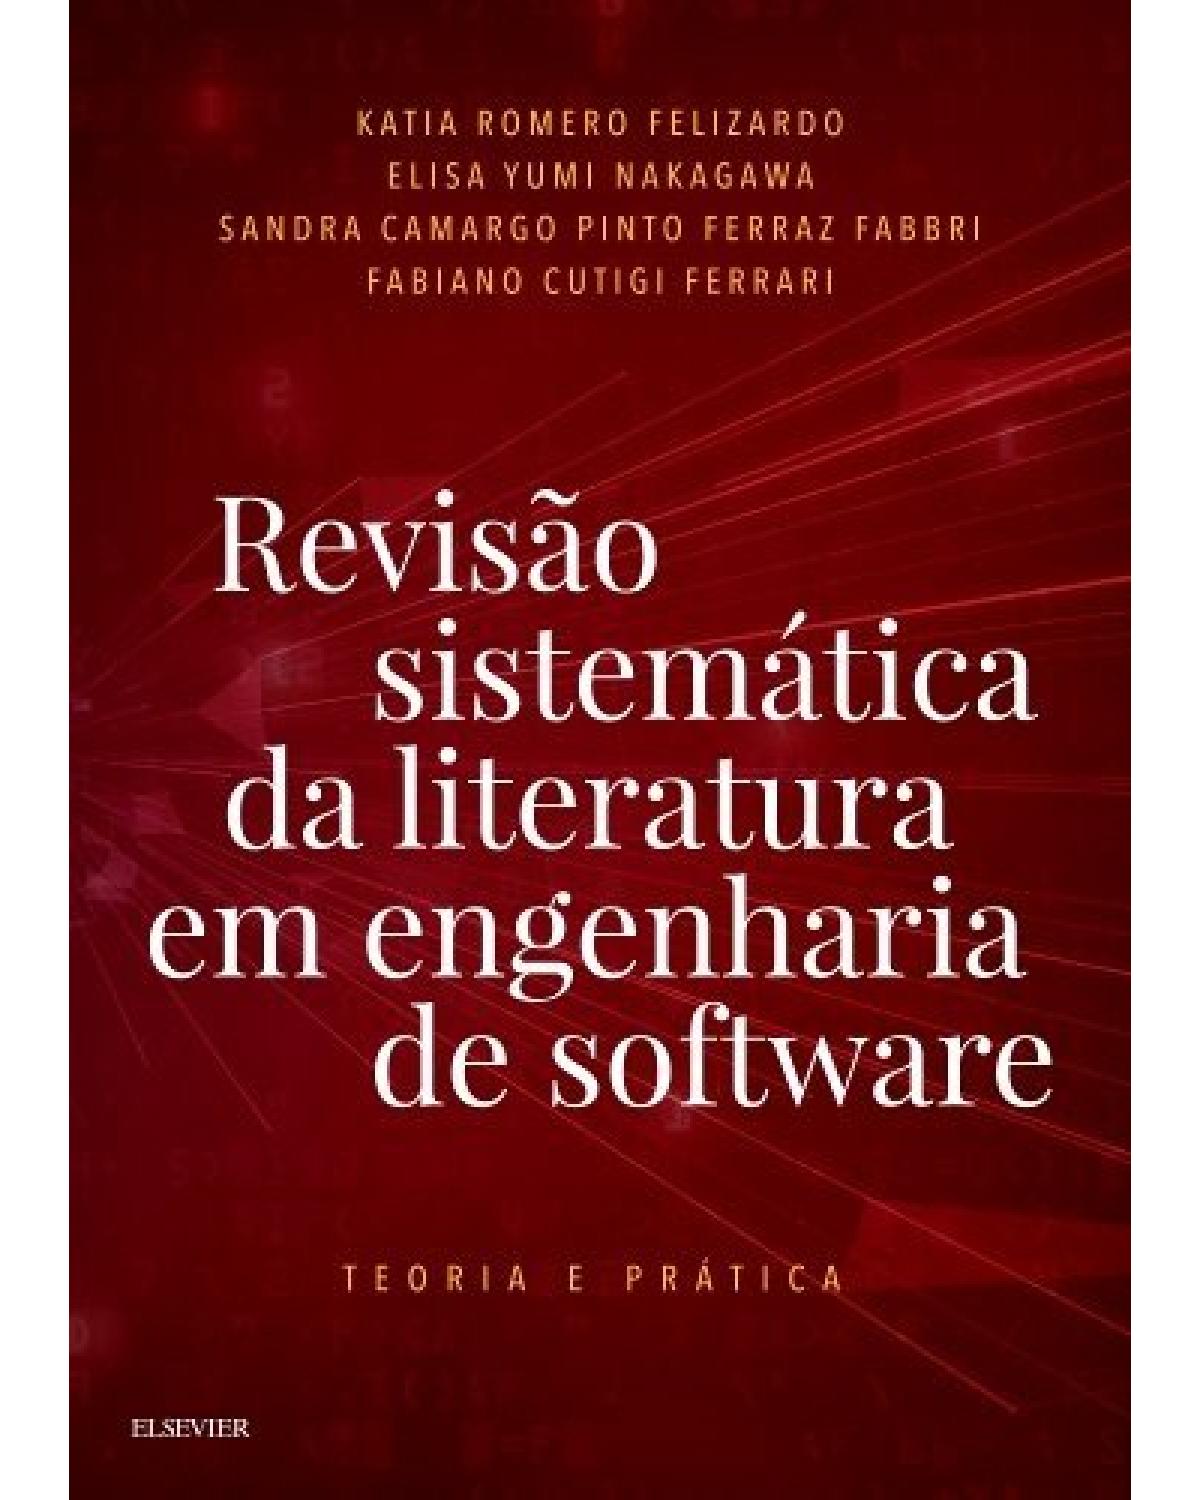 Revisão sistemática da literatura em engenharia de software - teoria e prática - 1ª Edição | 2017